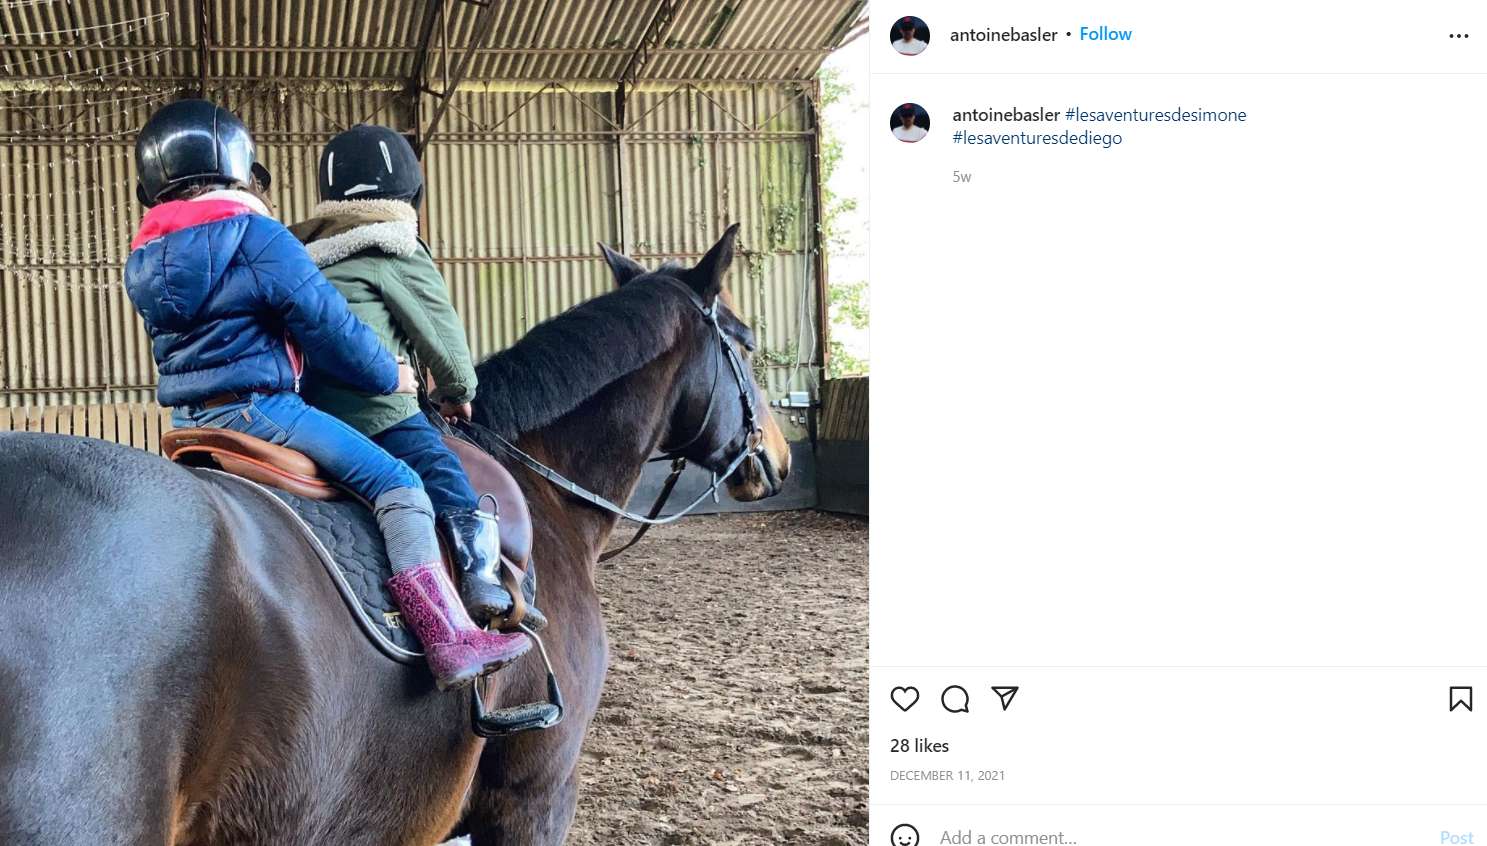 Antoine Basler's children on horseback